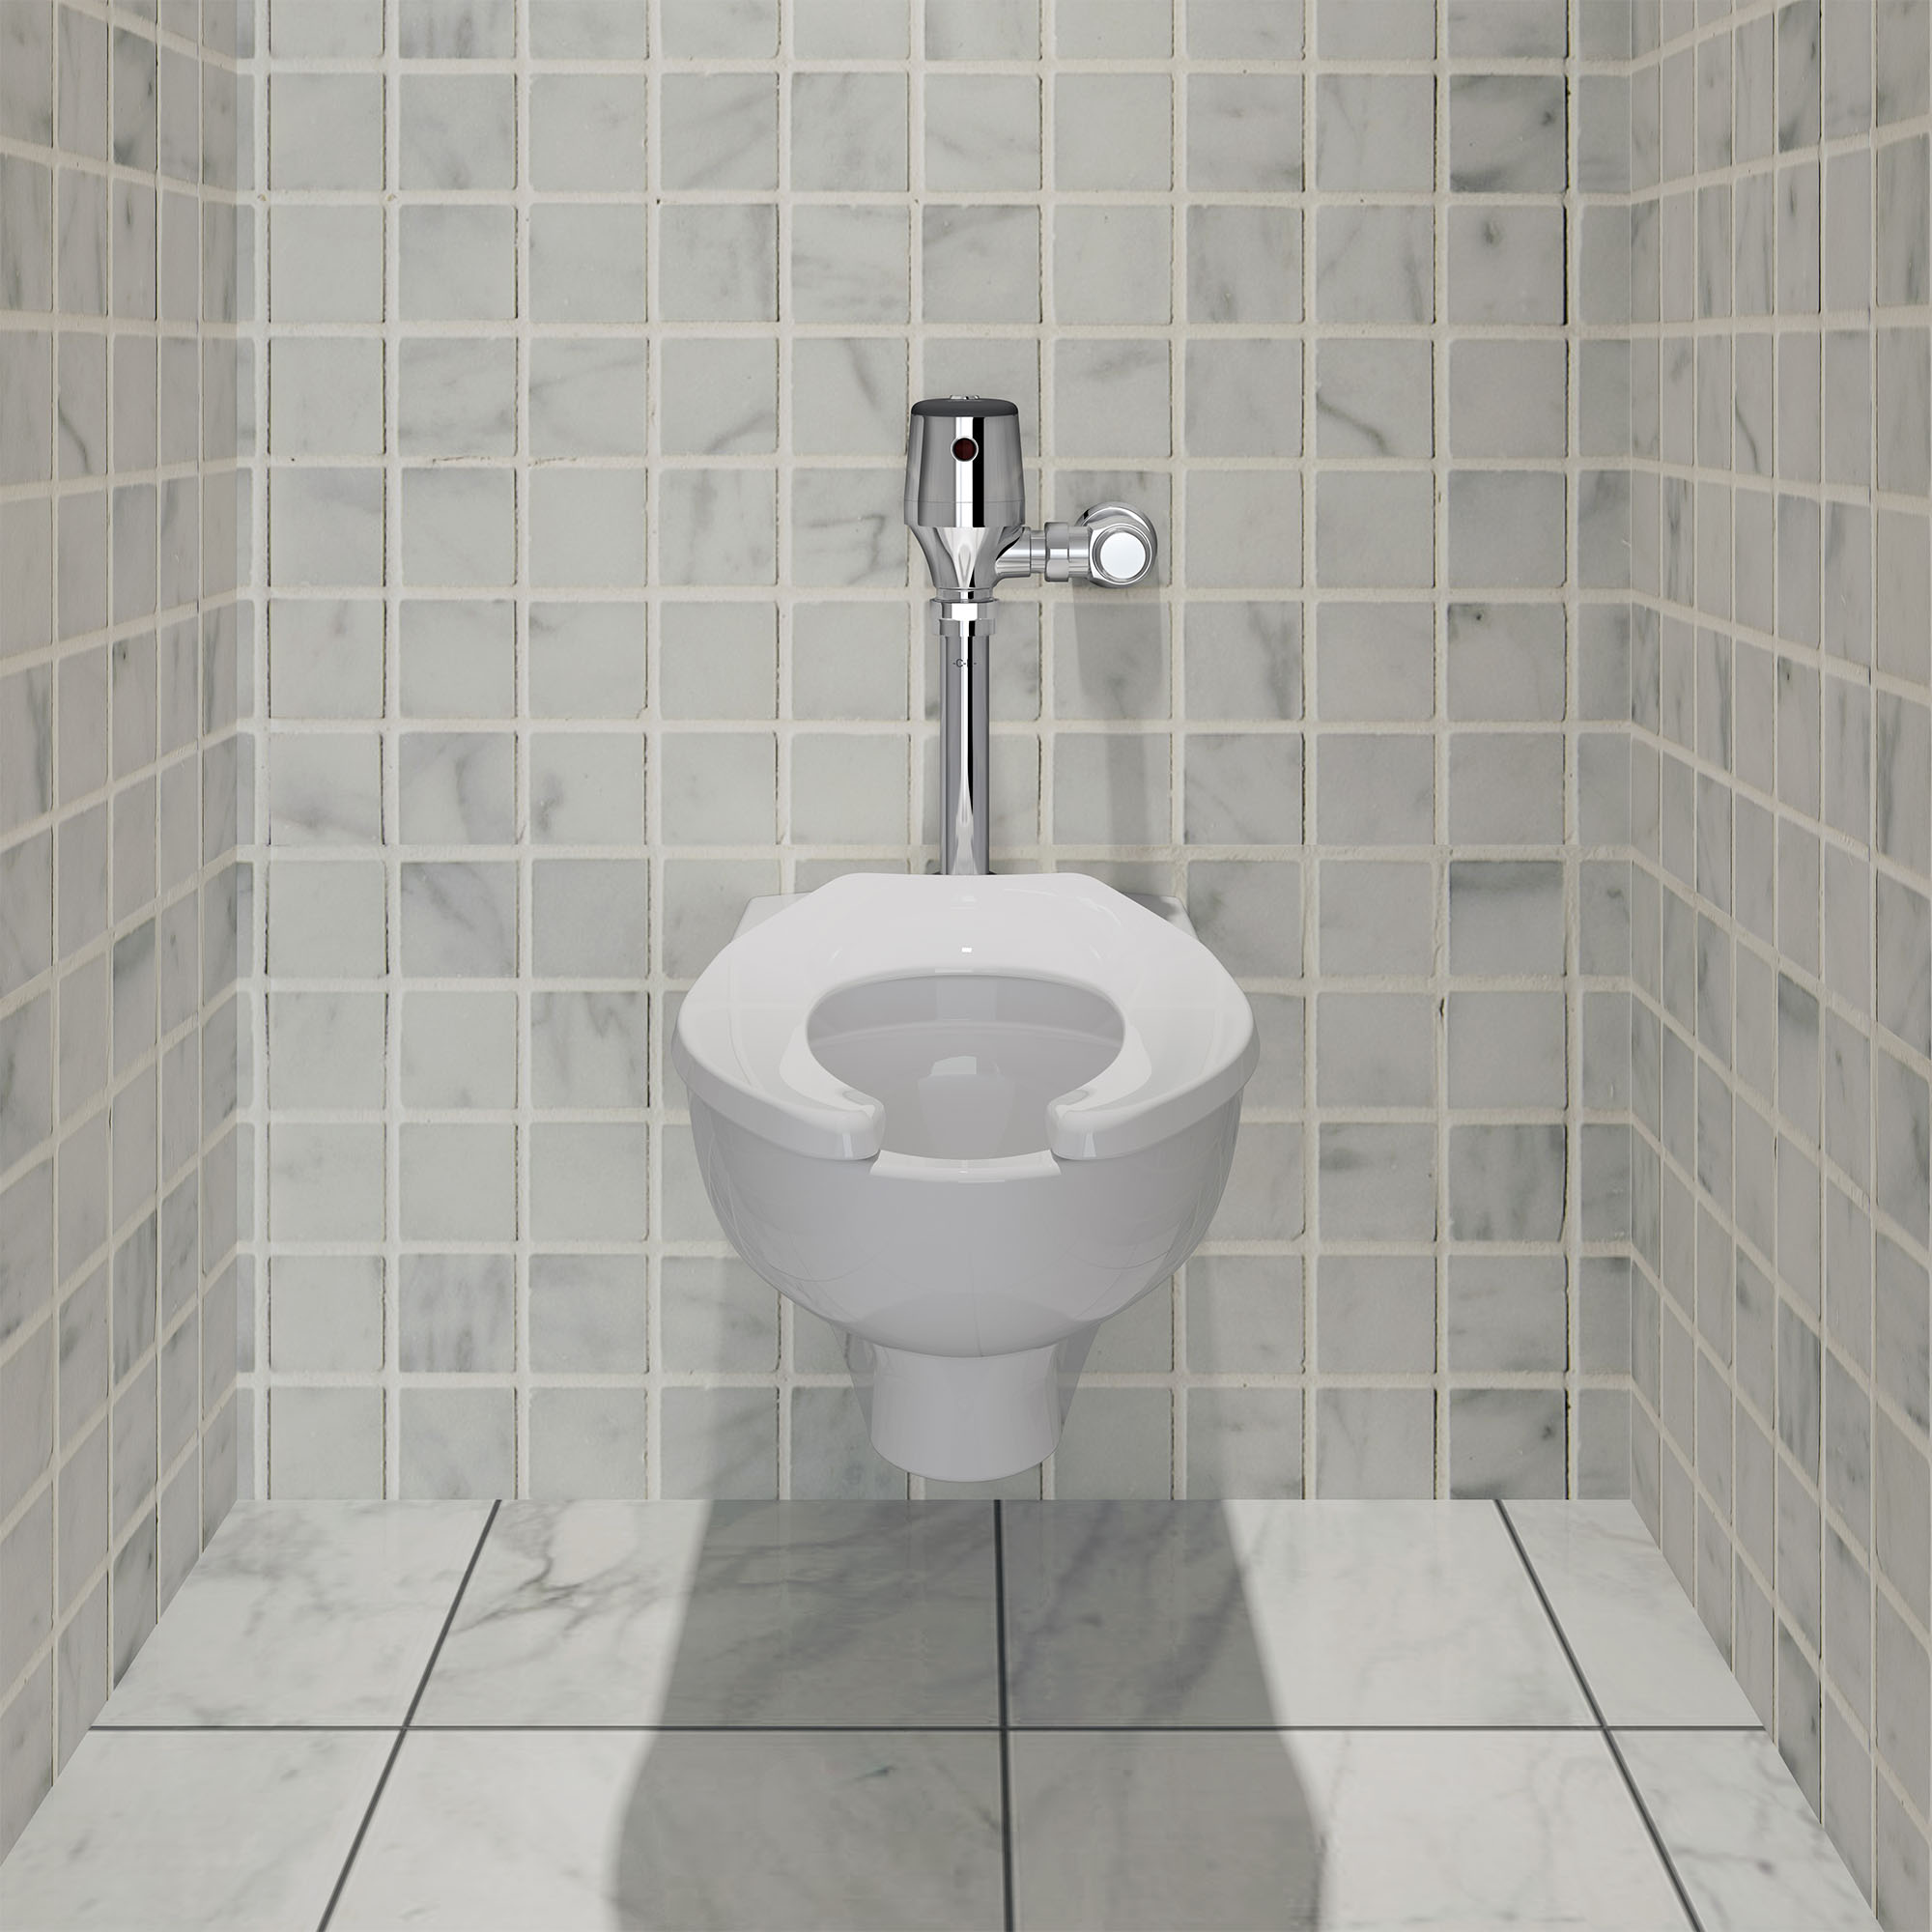 UltimaMC SelectronicMC - Robinet de chasse d'eau pour toilettes exposées, à diaphragme, modèle de base,1,1 gpc (4,2 Lpc)